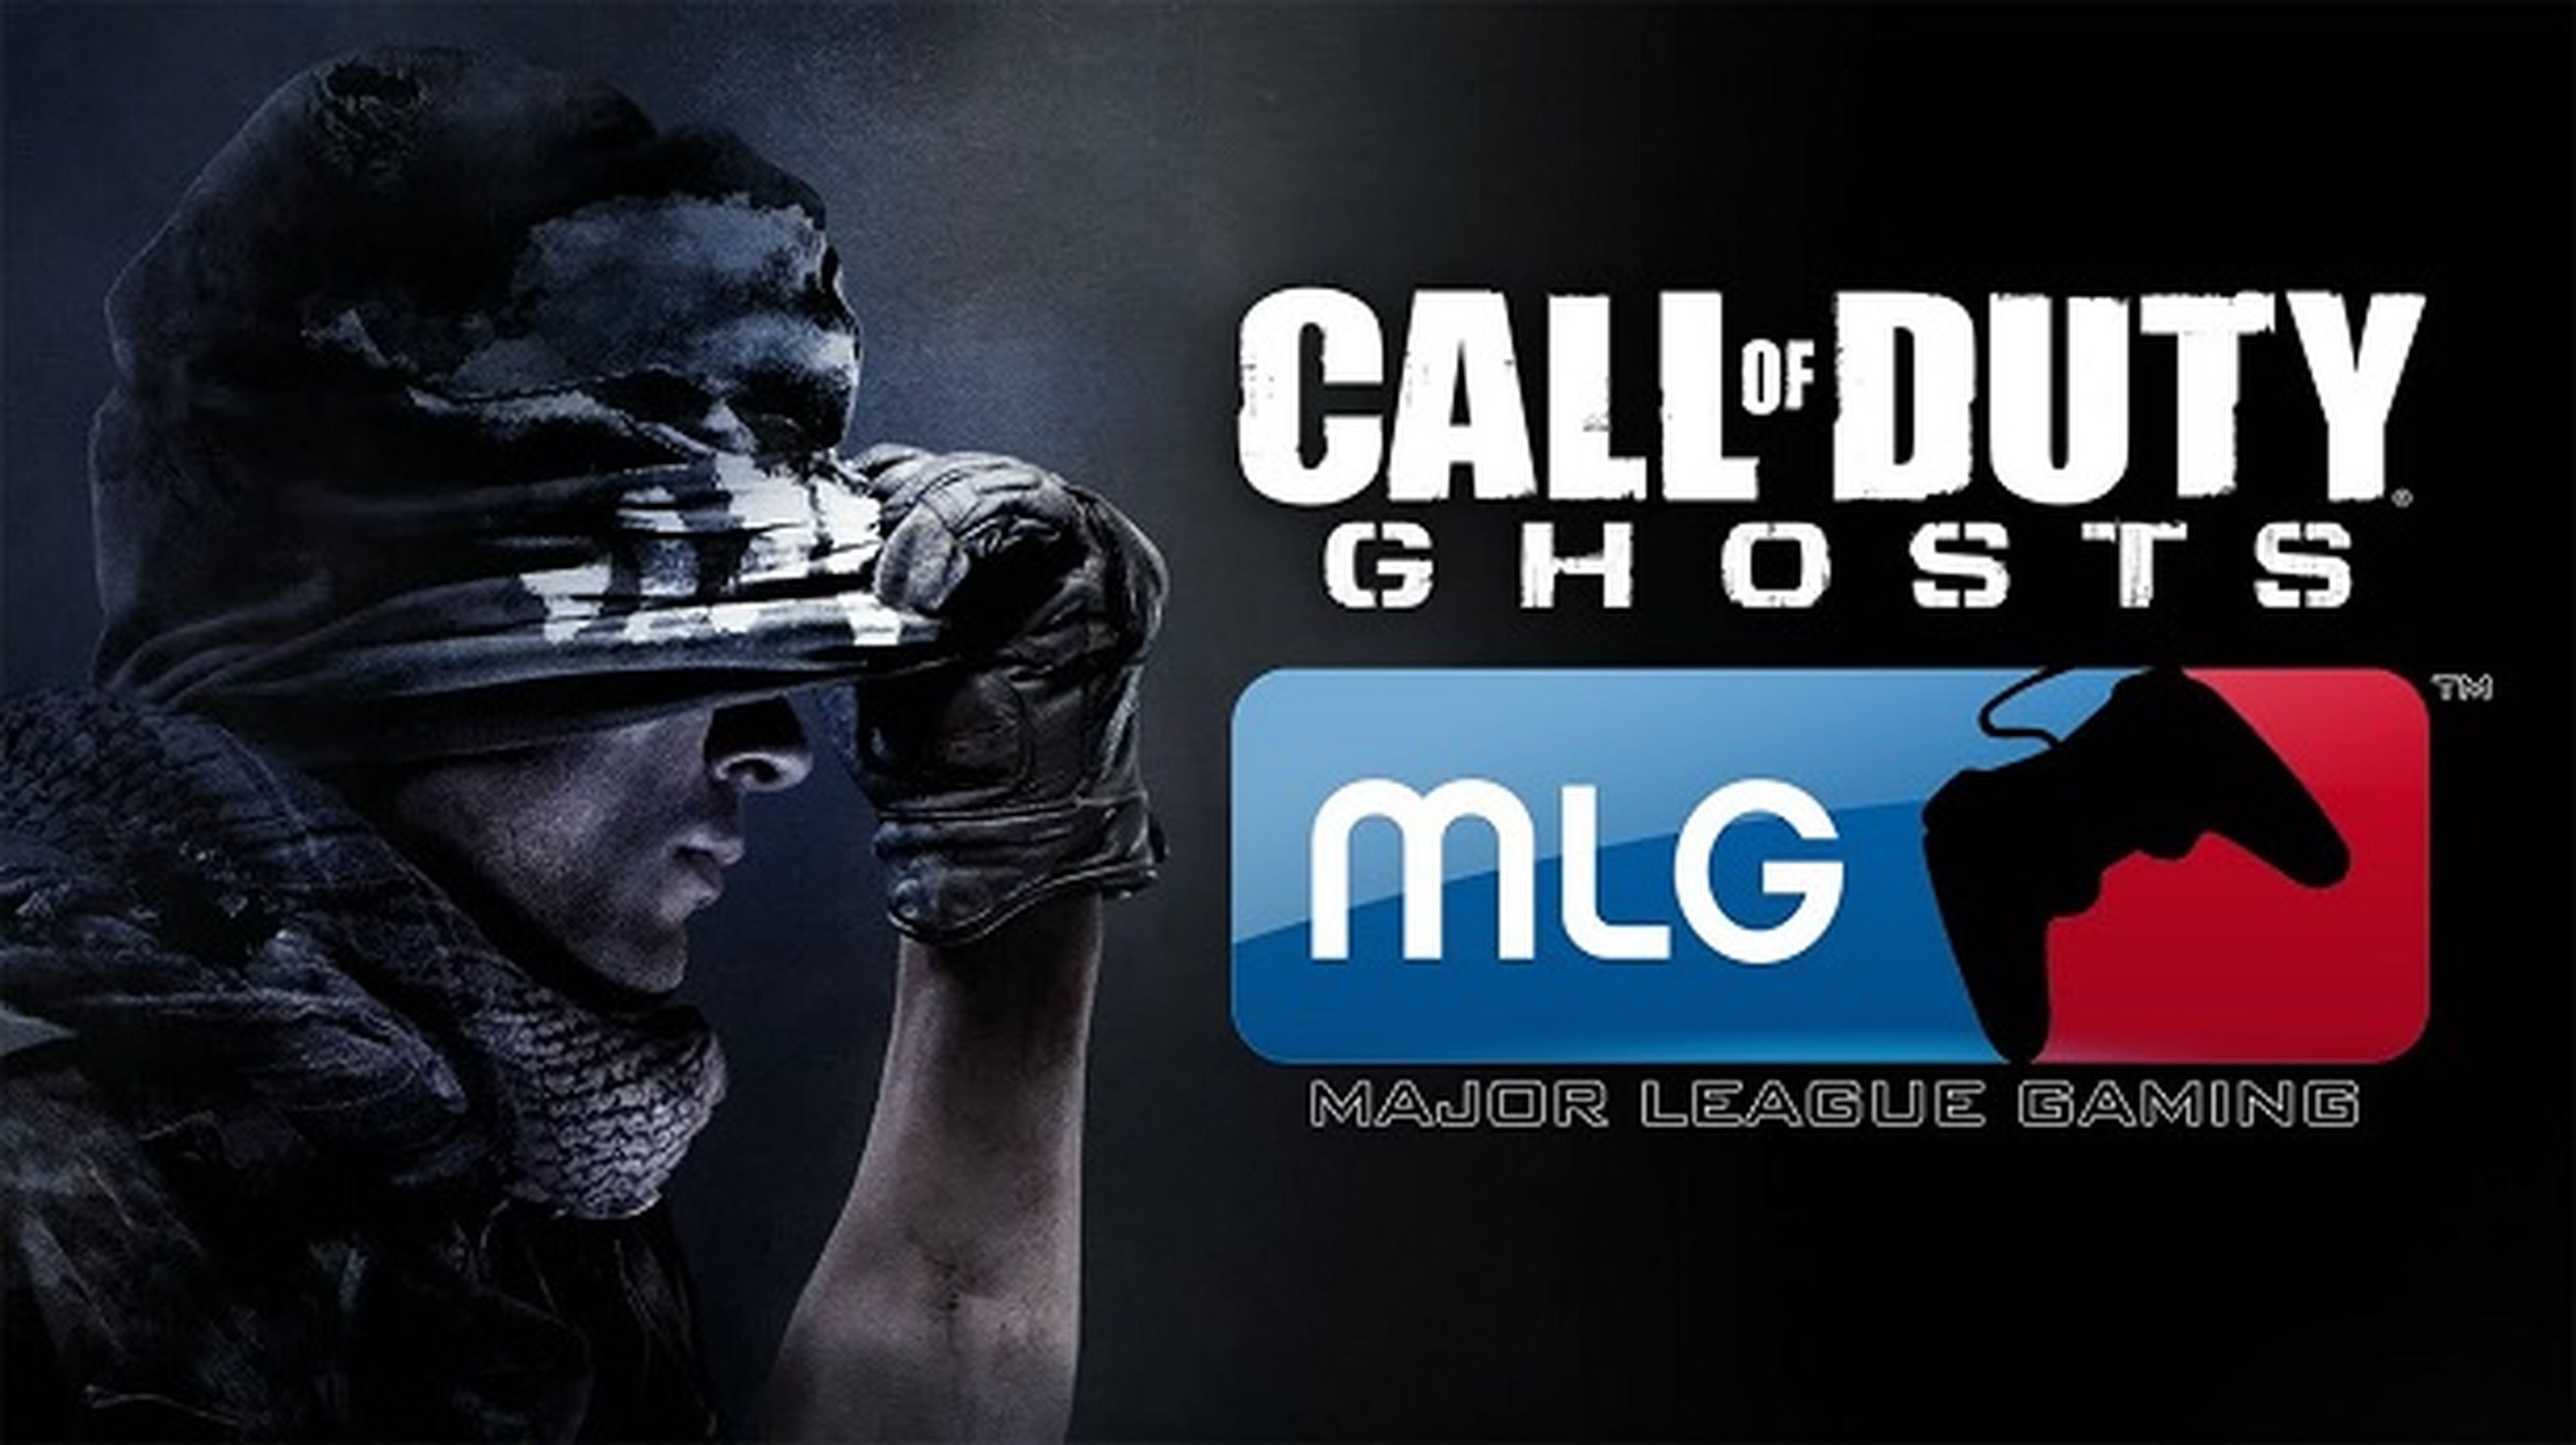 Xbox One, plataforma oficial para Call of Duty en la MLG